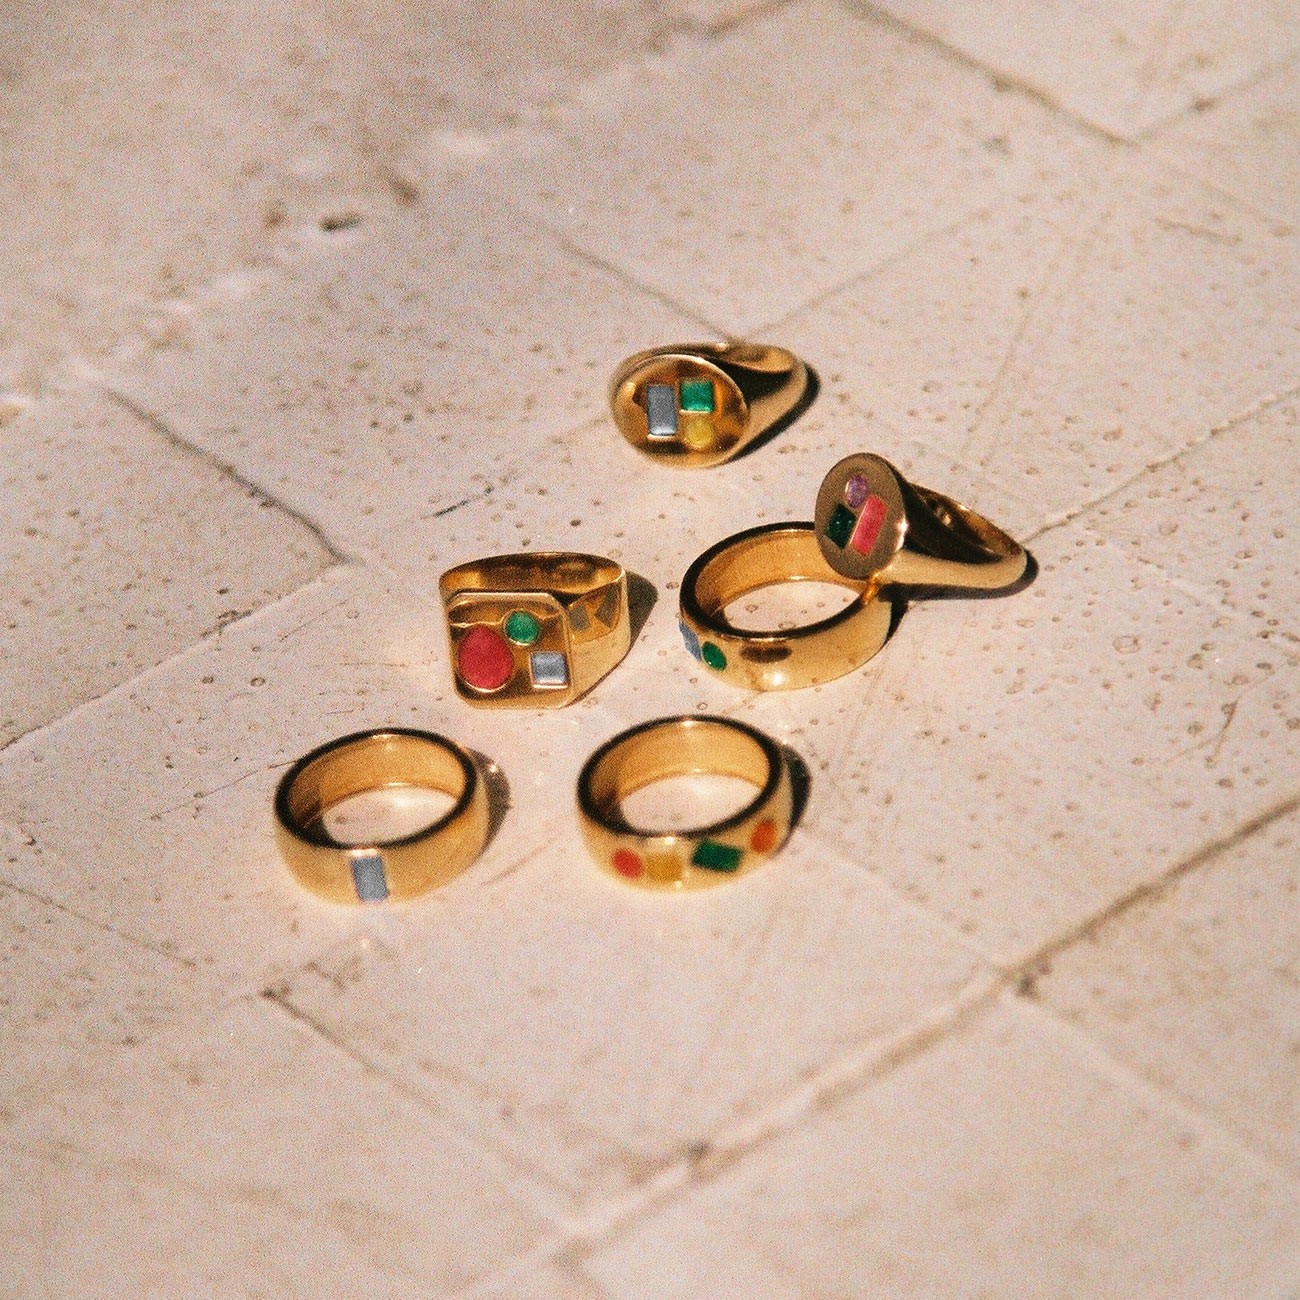 Kwadratowy pierścionek sygnet damski z kolorowymi kamieniami